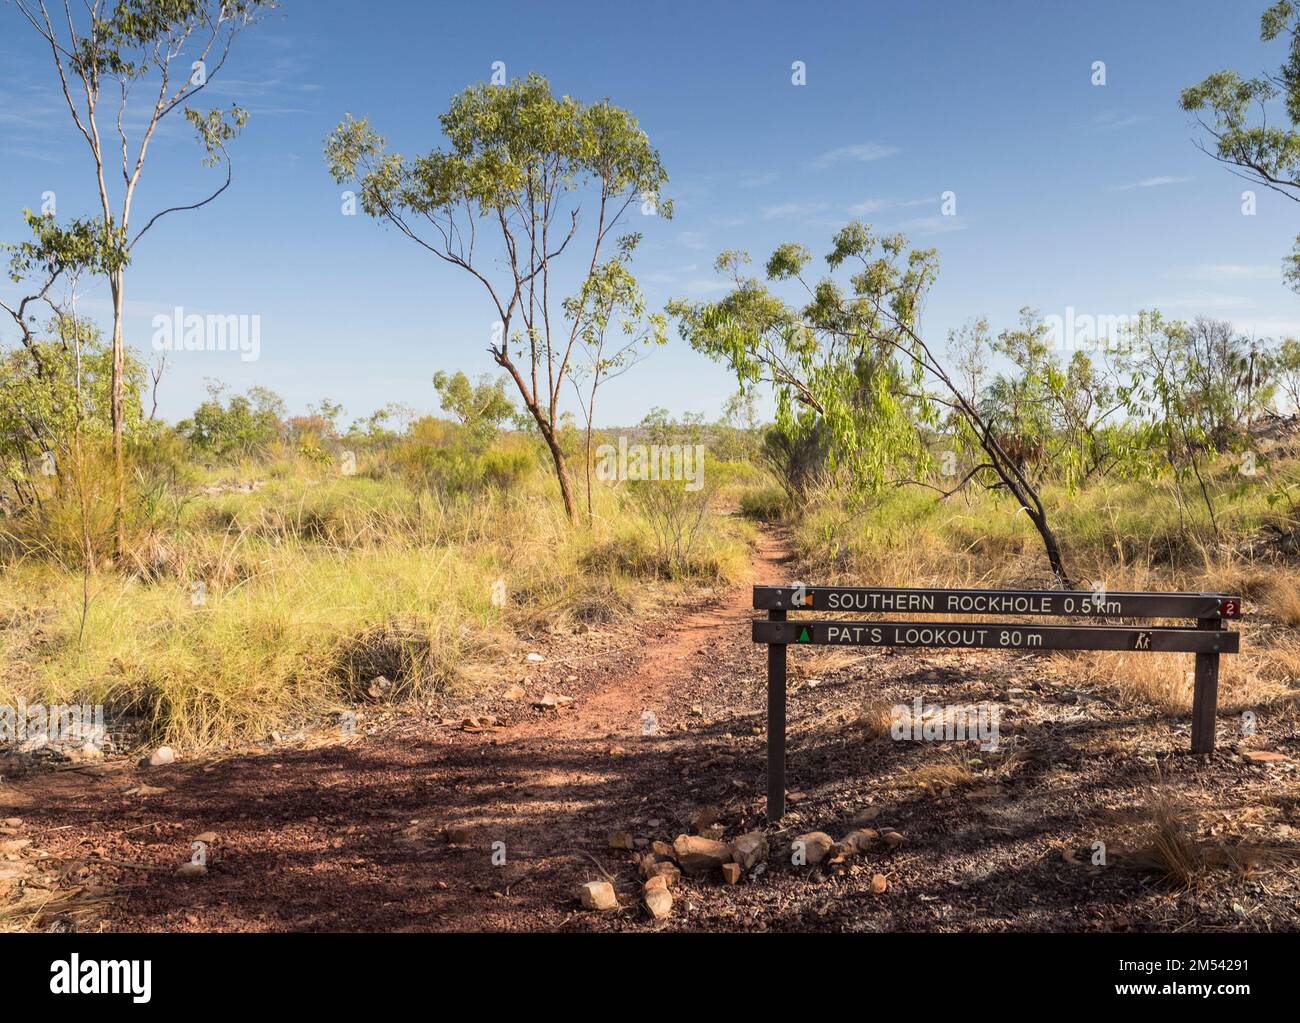 Jonction sur piste vers Southern Rockhole, Southern Walks, Katherine gorge, parc national de Nitmiluk, territoire du Nord, Australie Banque D'Images